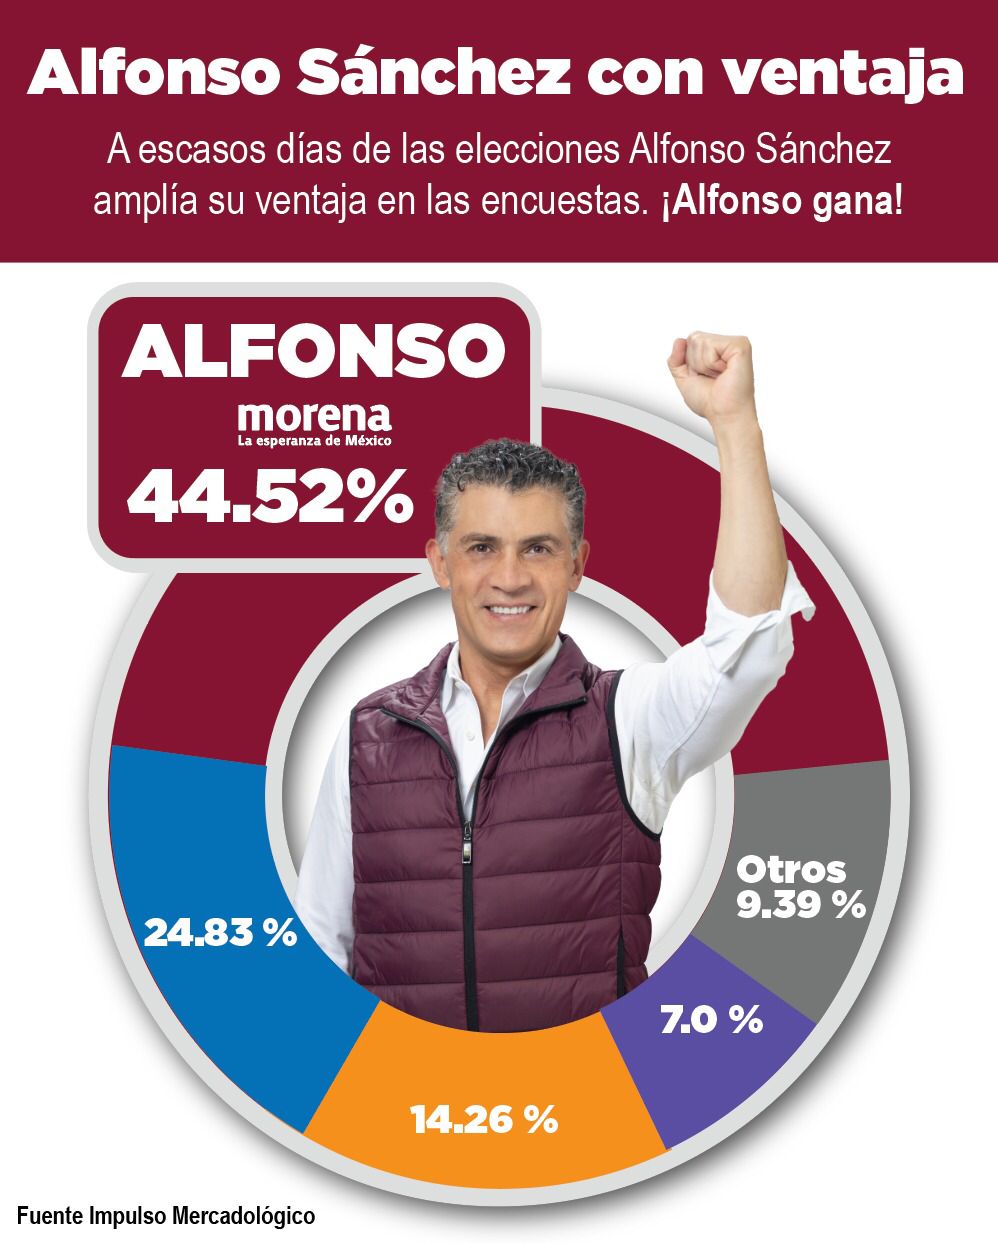 Alfonso Sánchez, a la cabeza en preferencias electorales para la alcaldía de Tlaxcala, muestran encuestas